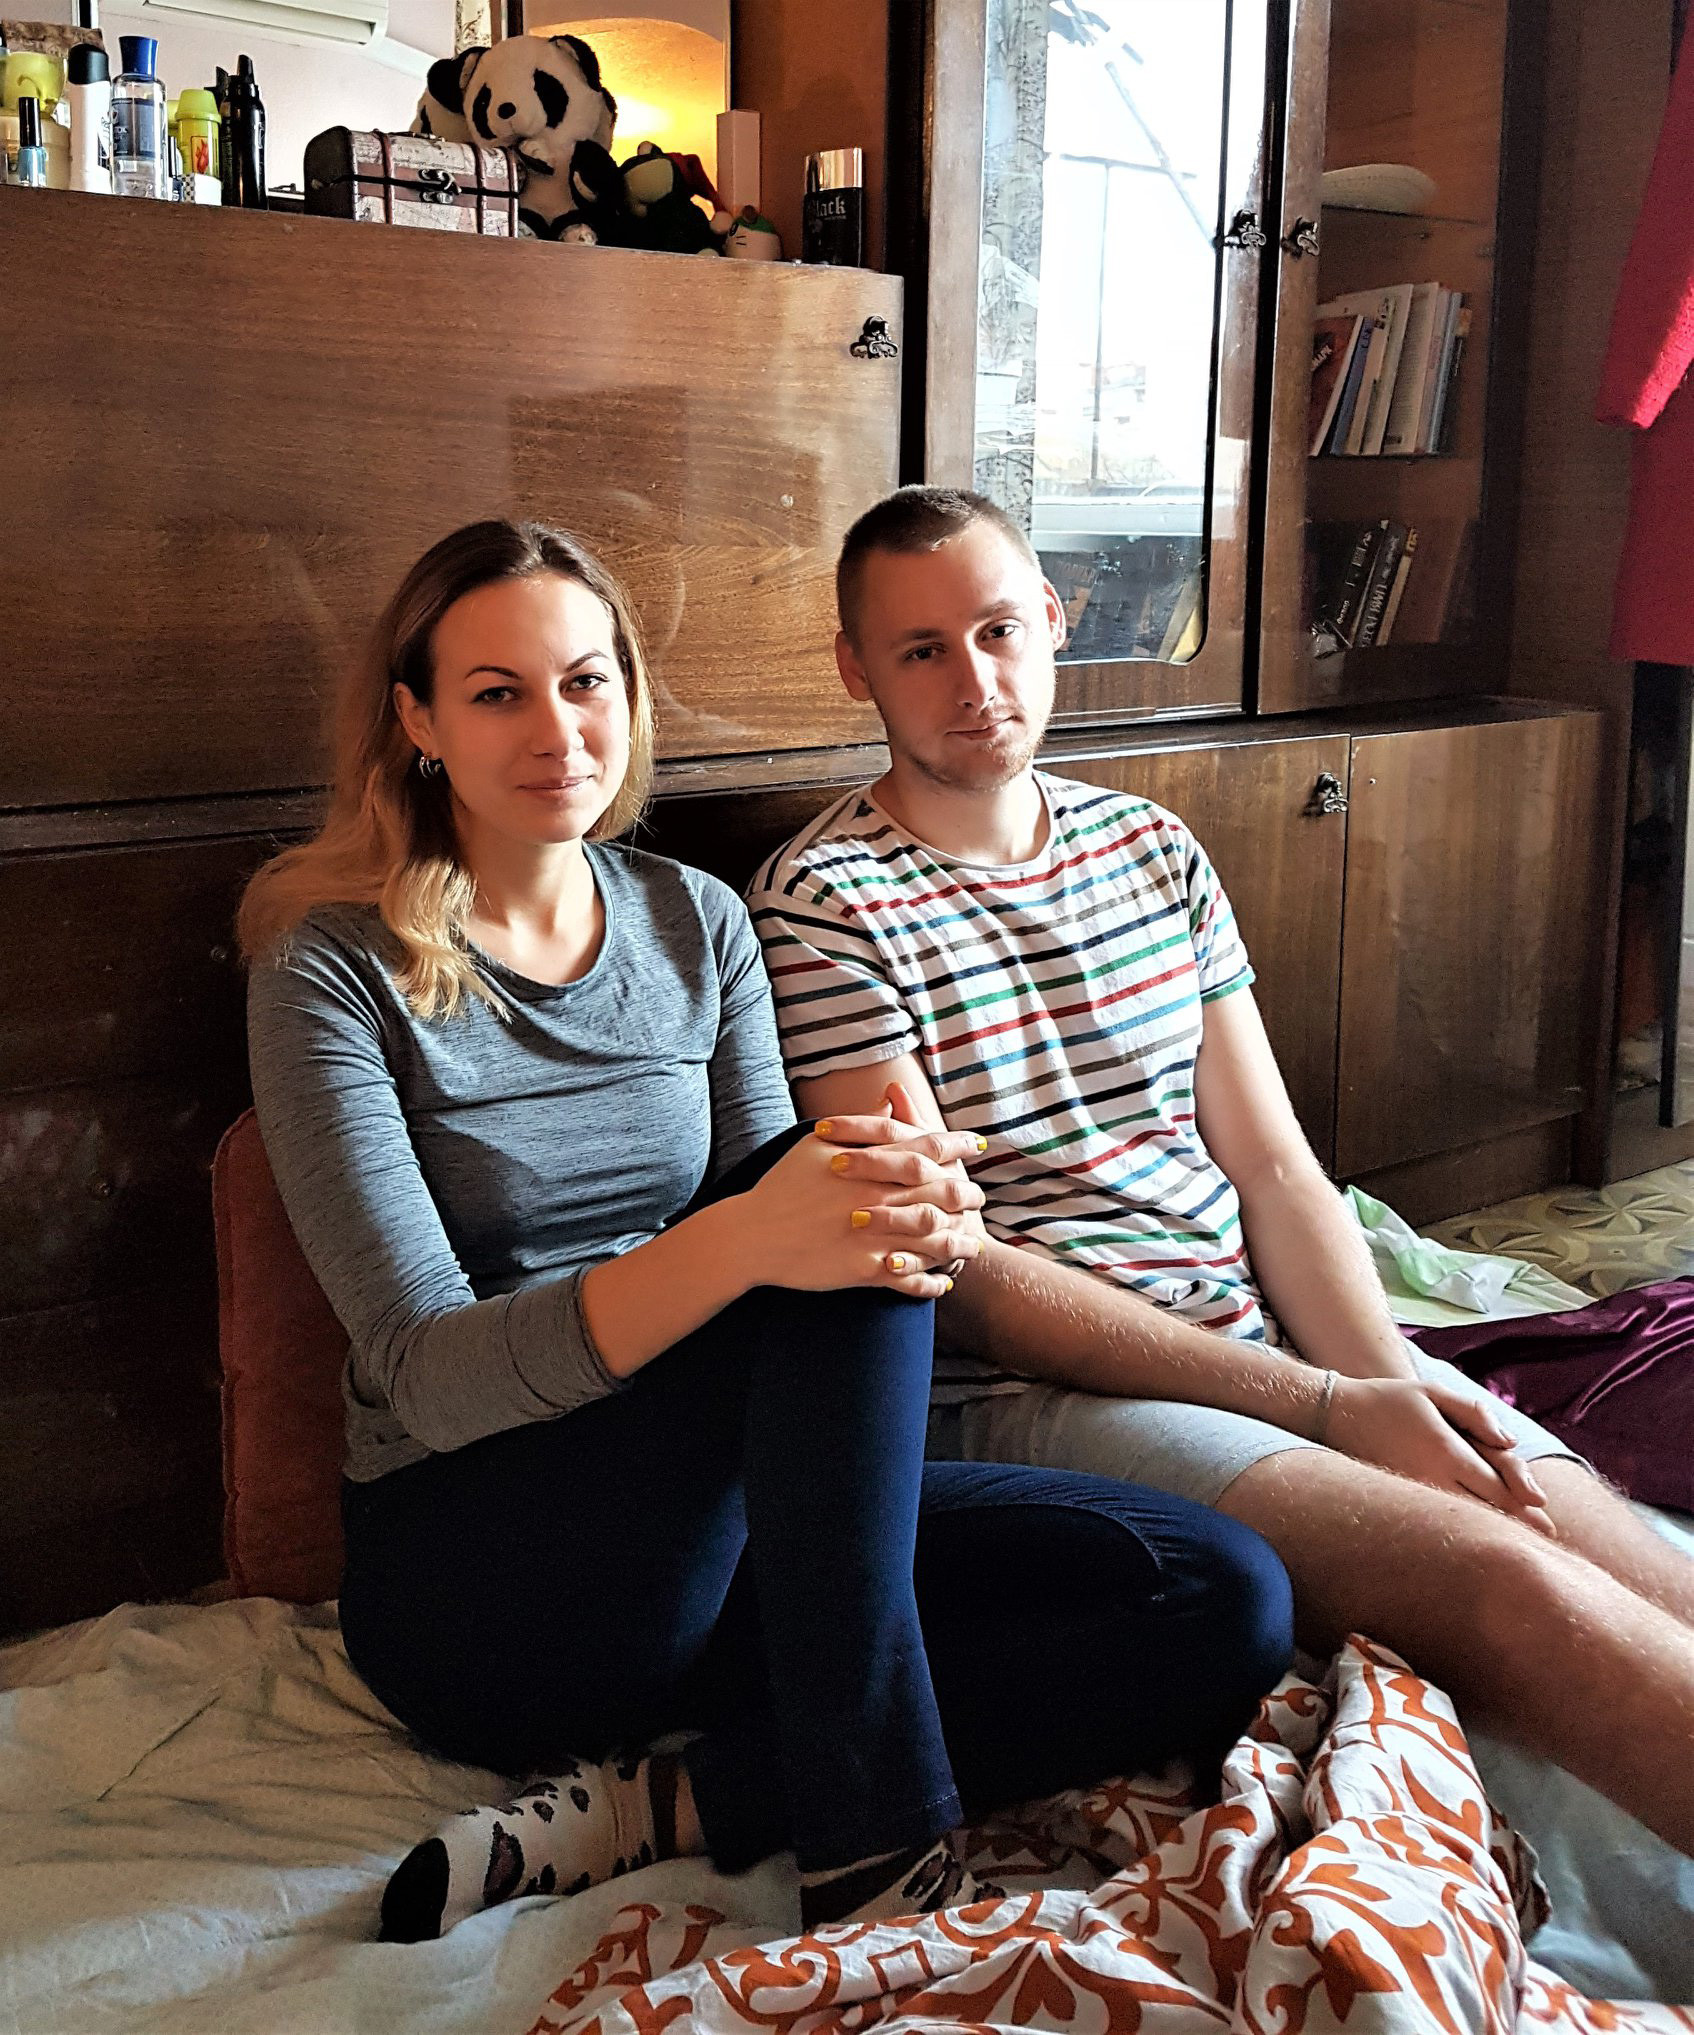 Román y Masha viven en un pequeño piso en el centro de Sloviansk. Ambos trabajan para la ONG People in Need, que apoya a la población civil de Donbáss. Román dejó su casa en Donetsk en 2014. Desde entonces, la ONG ha sido prohibida en las Repúblicas Populares de Donetsk y Lugansk.